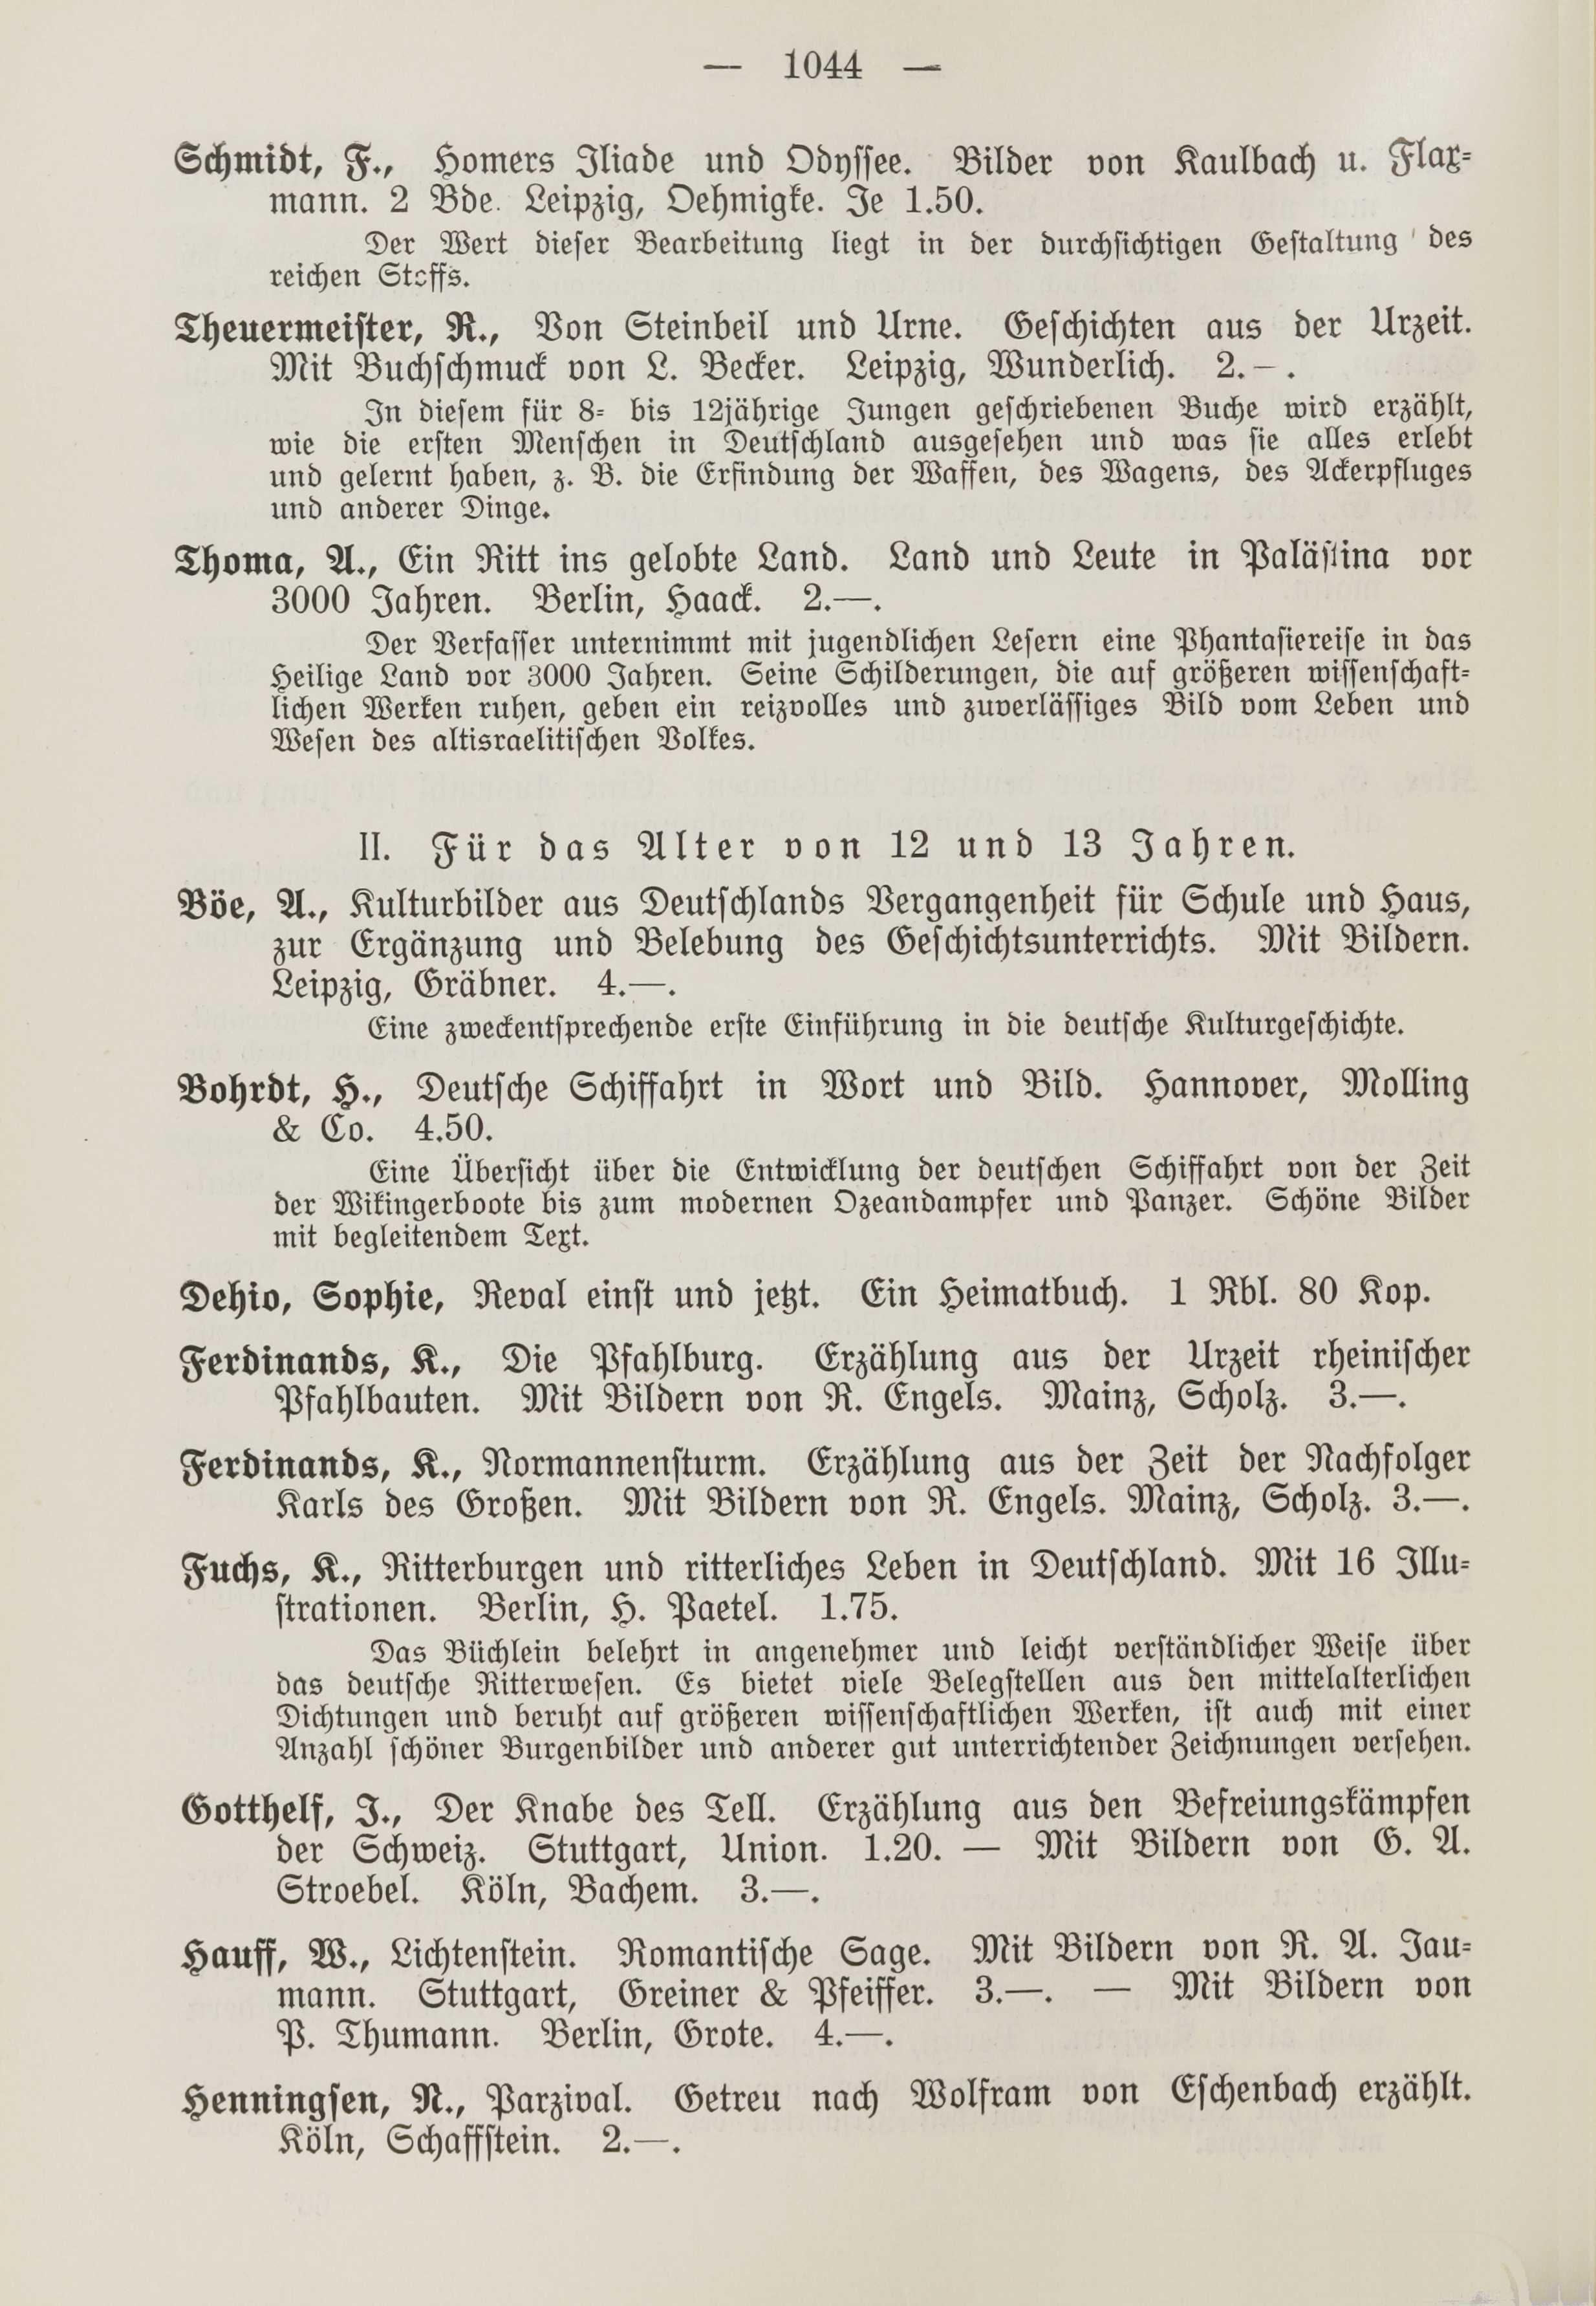 Deutsche Monatsschrift für Russland [1] (1912) | 1052. (1044) Haupttext